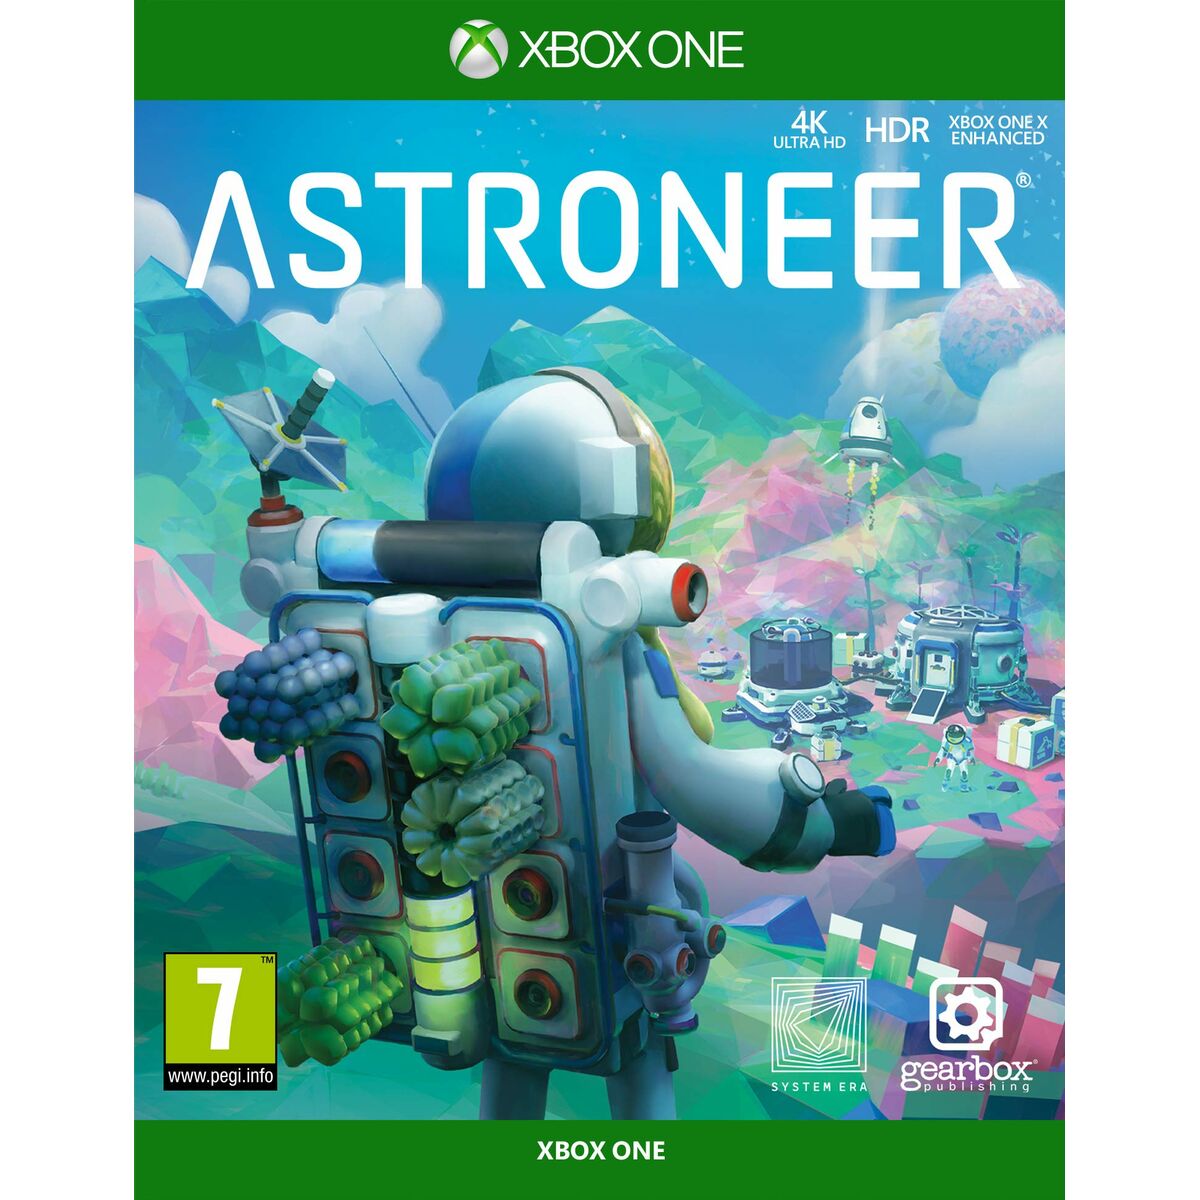 Joc video Xbox One Meridiem Games Astroneer